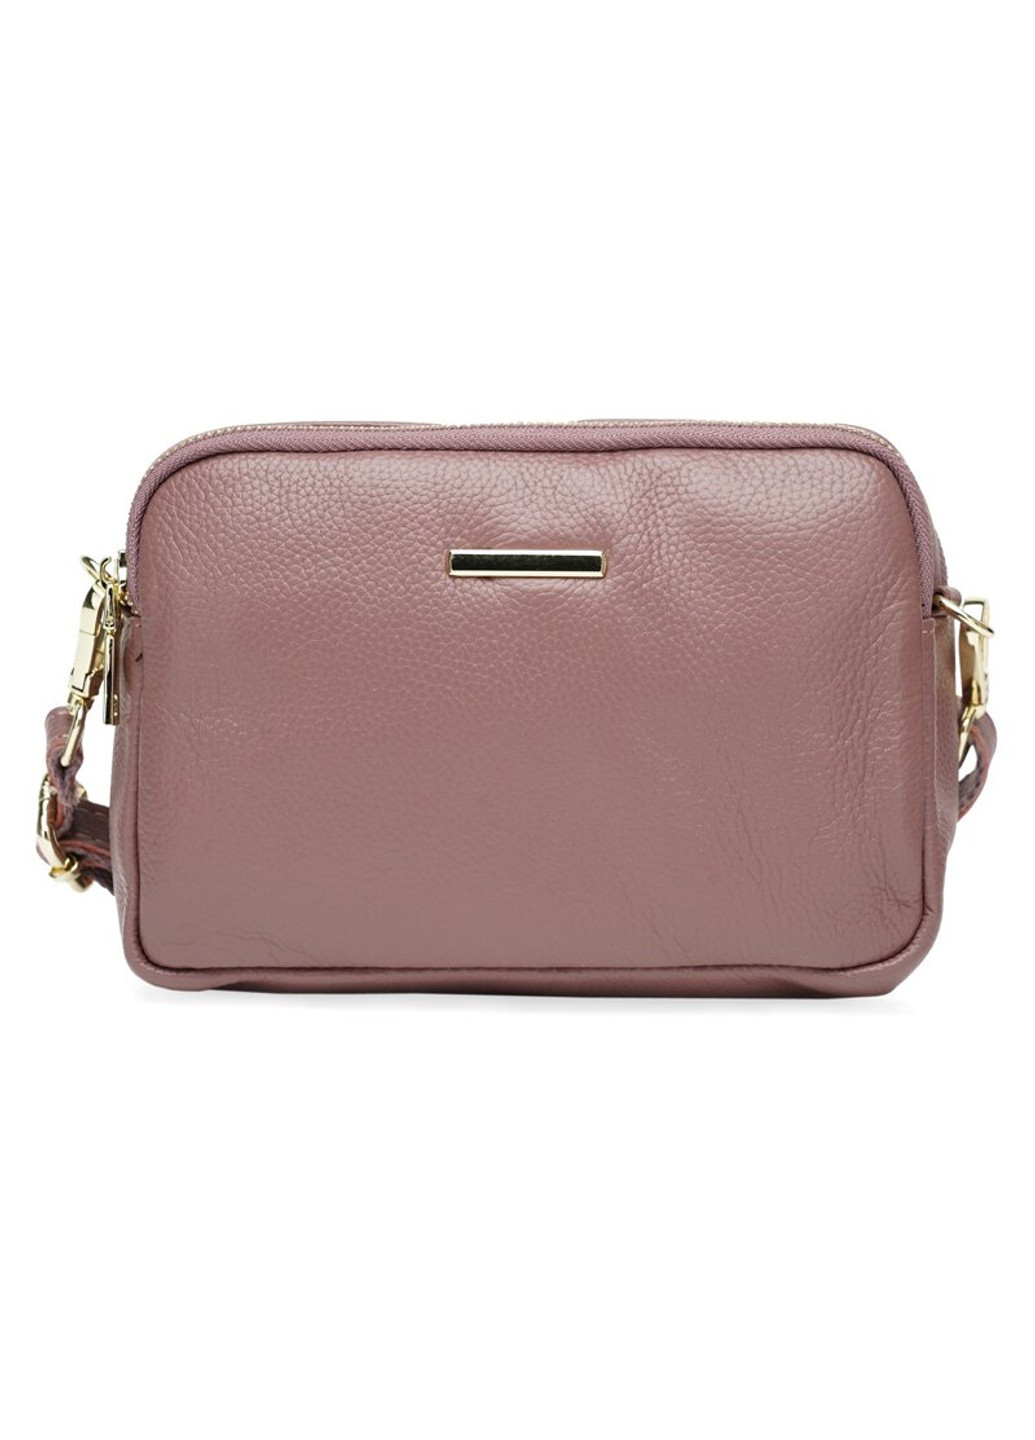 Женская кожаная сумка K11906-beige Borsa Leather (266143891)